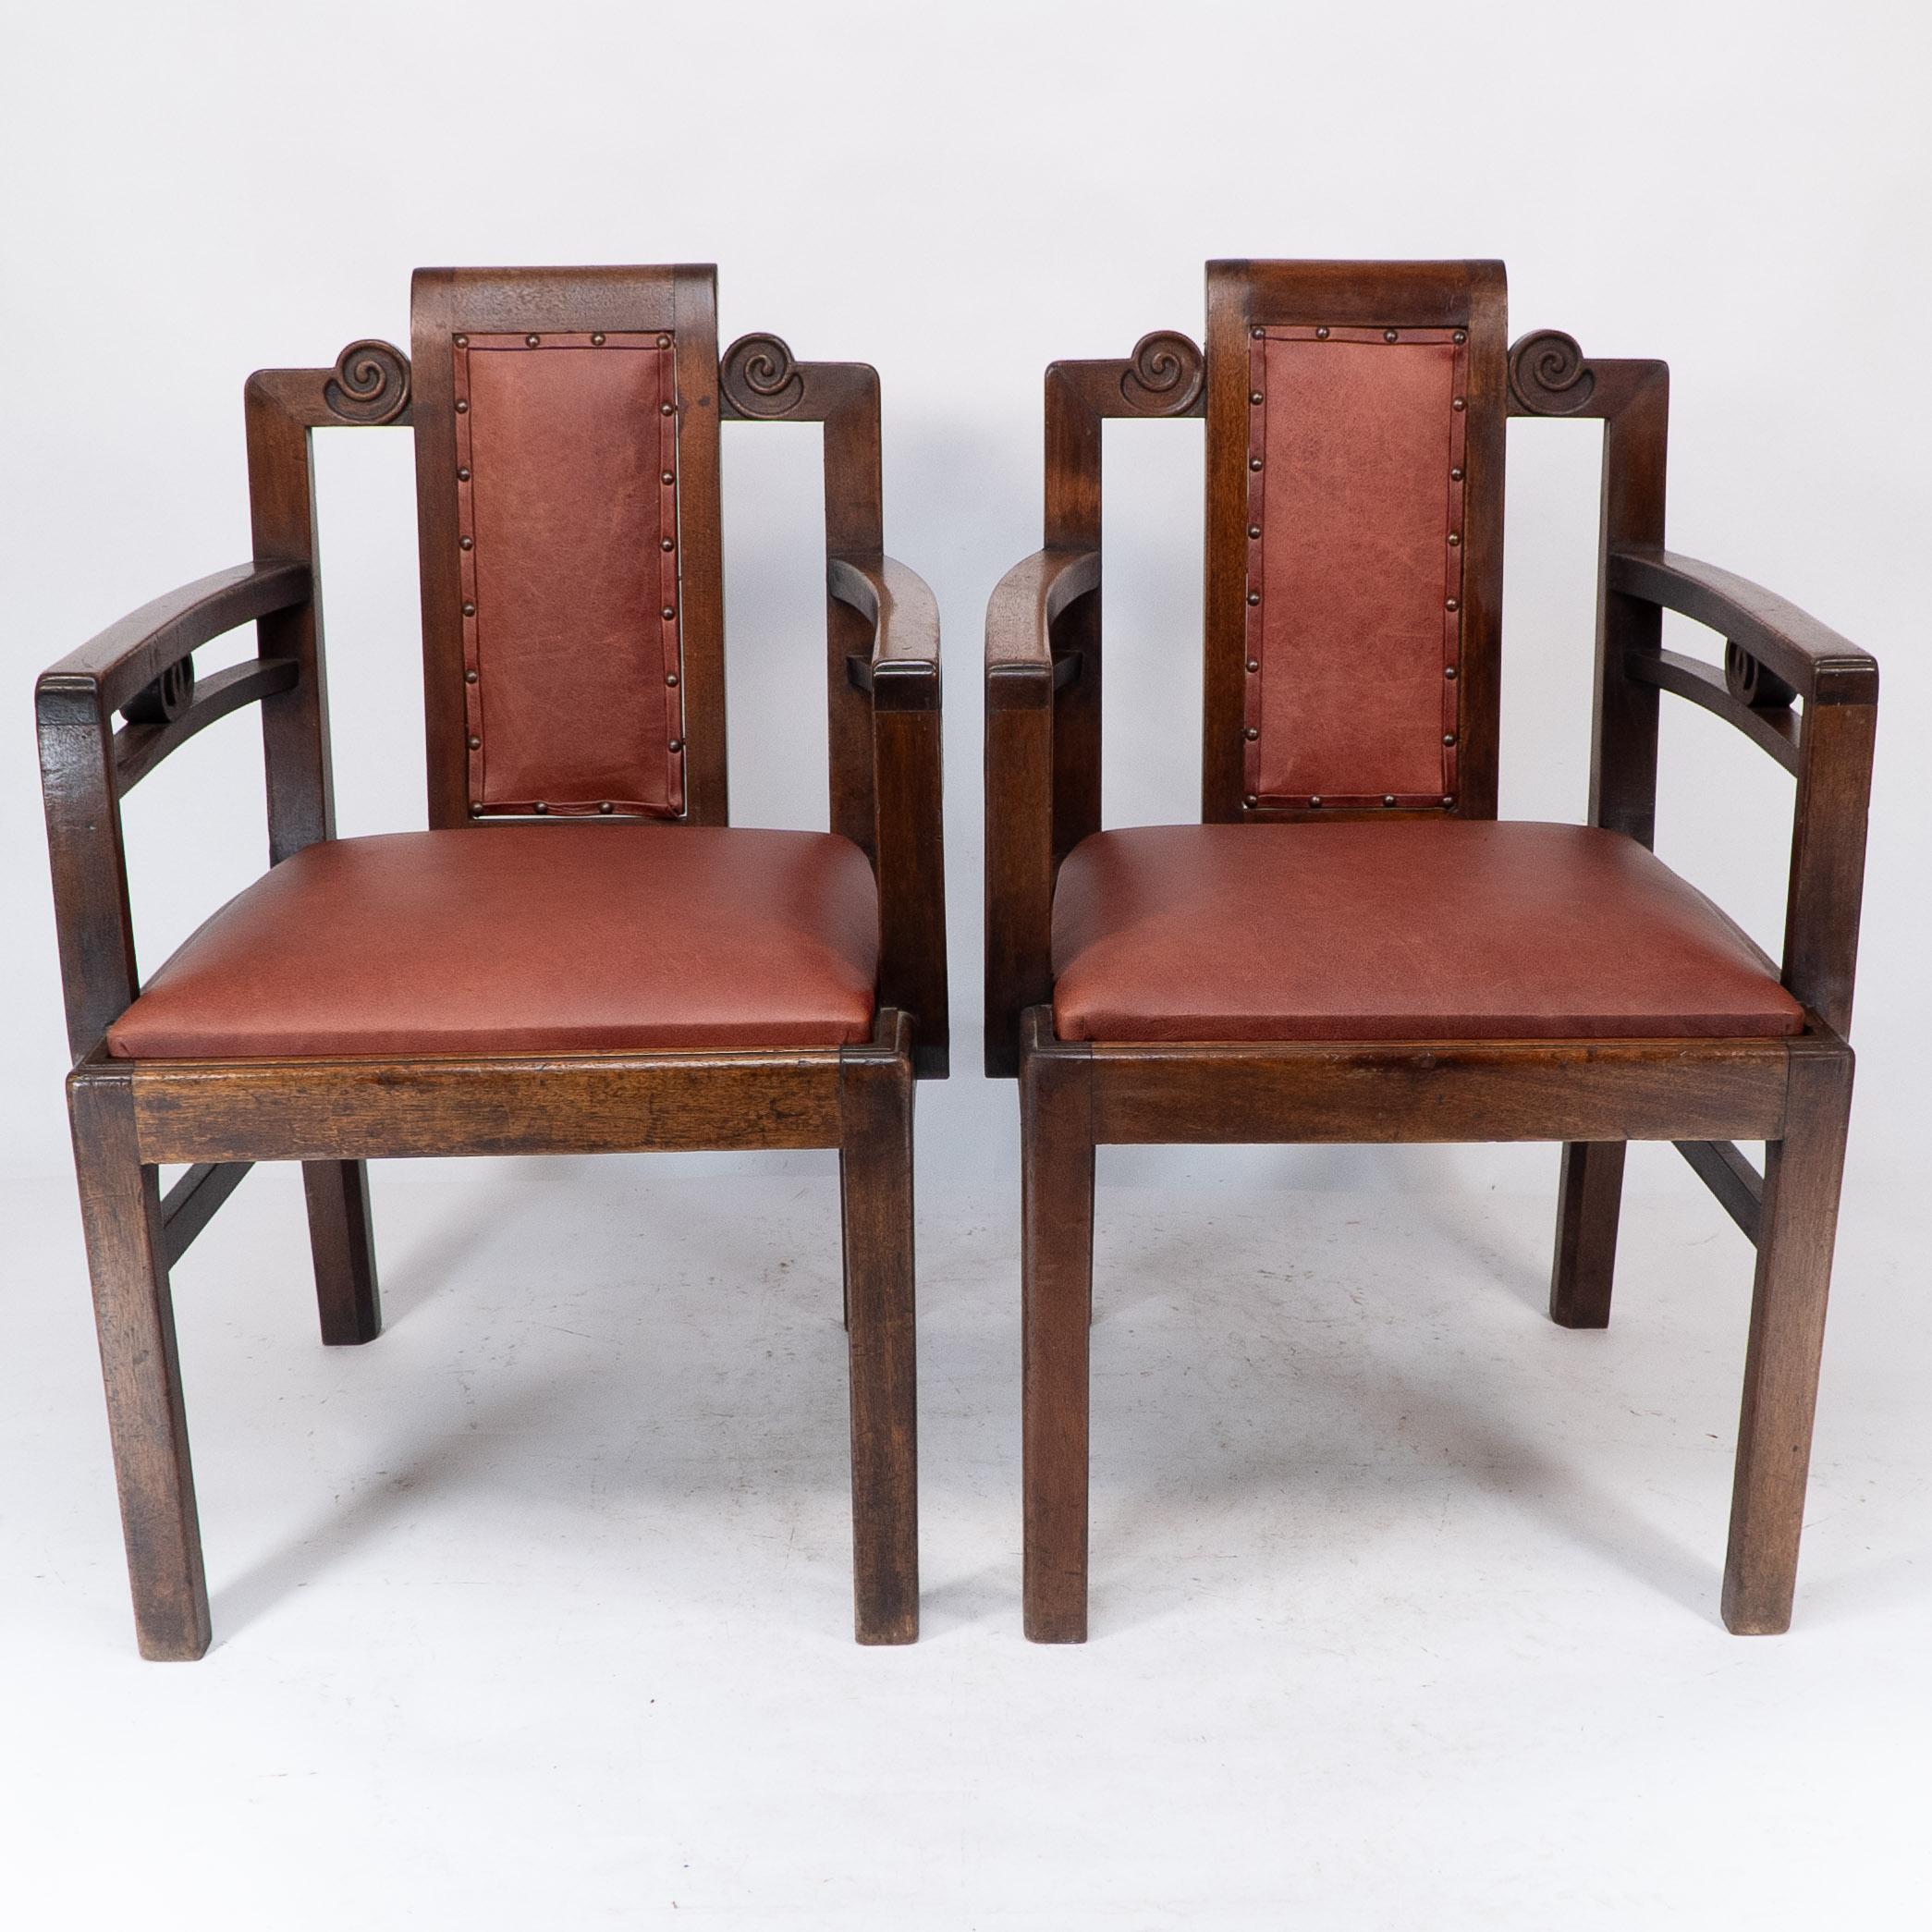 Sir Frank Brangwyn (zugeschrieben), ein Paar Mahagoni-Sessel im chinesischen Stil mit fachgerecht neu gepolsterter Lederrückenlehne und Klappsitz. 
Diese Stühle haben stilistische Qualitäten mit den berühmten Sesseln, die er für den Salle Jacques